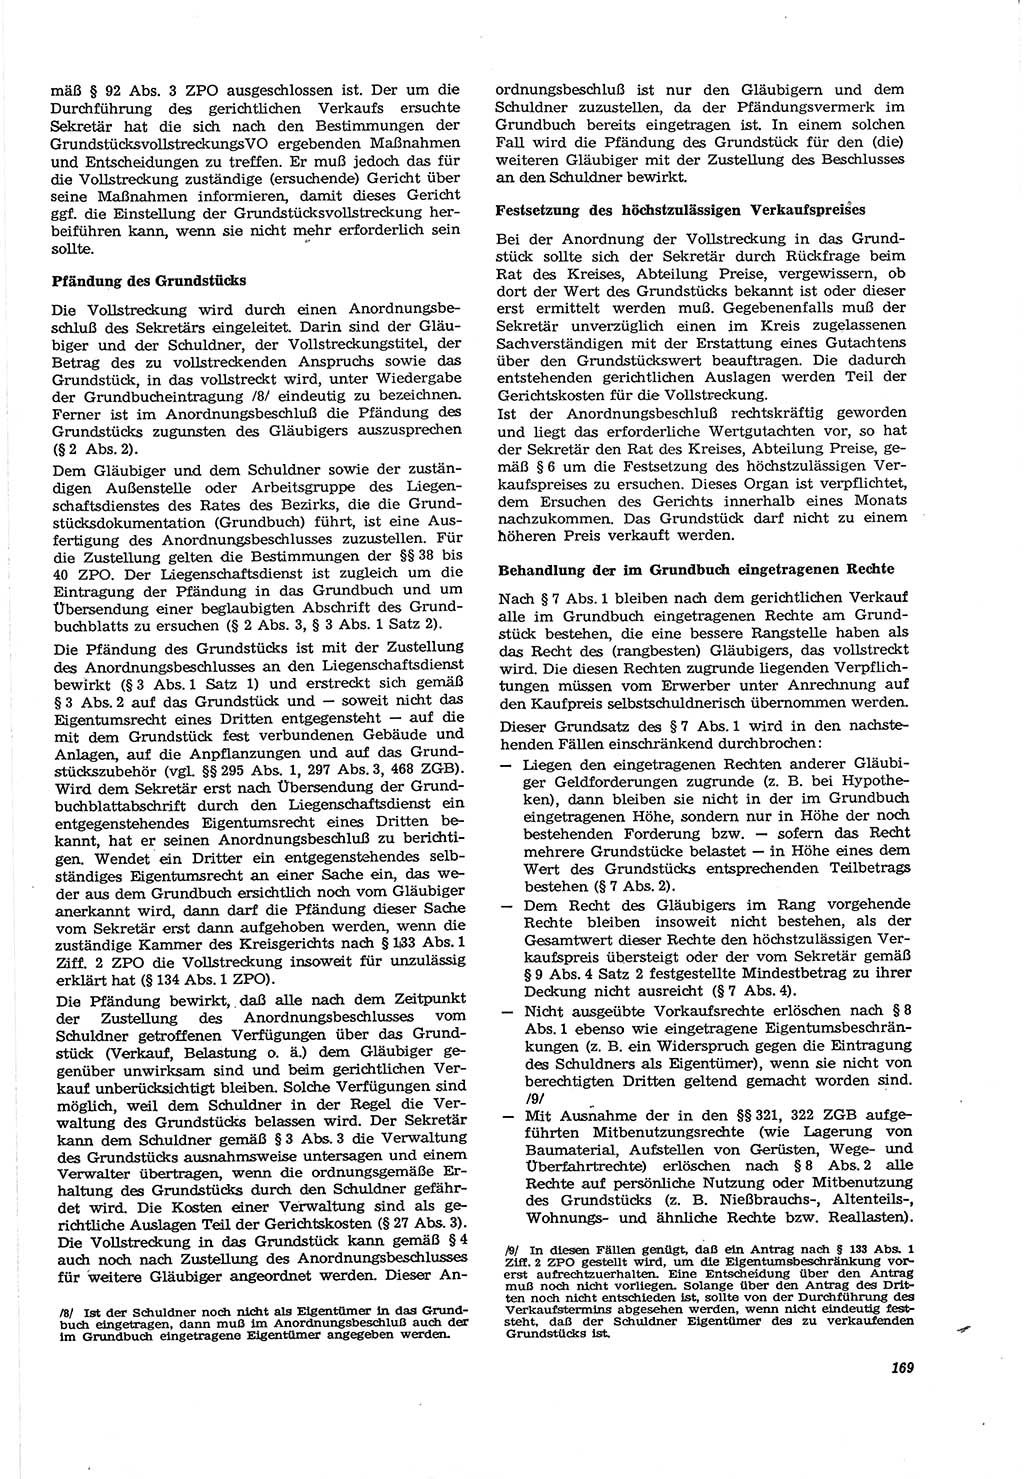 Neue Justiz (NJ), Zeitschrift für Recht und Rechtswissenschaft [Deutsche Demokratische Republik (DDR)], 30. Jahrgang 1976, Seite 169 (NJ DDR 1976, S. 169)